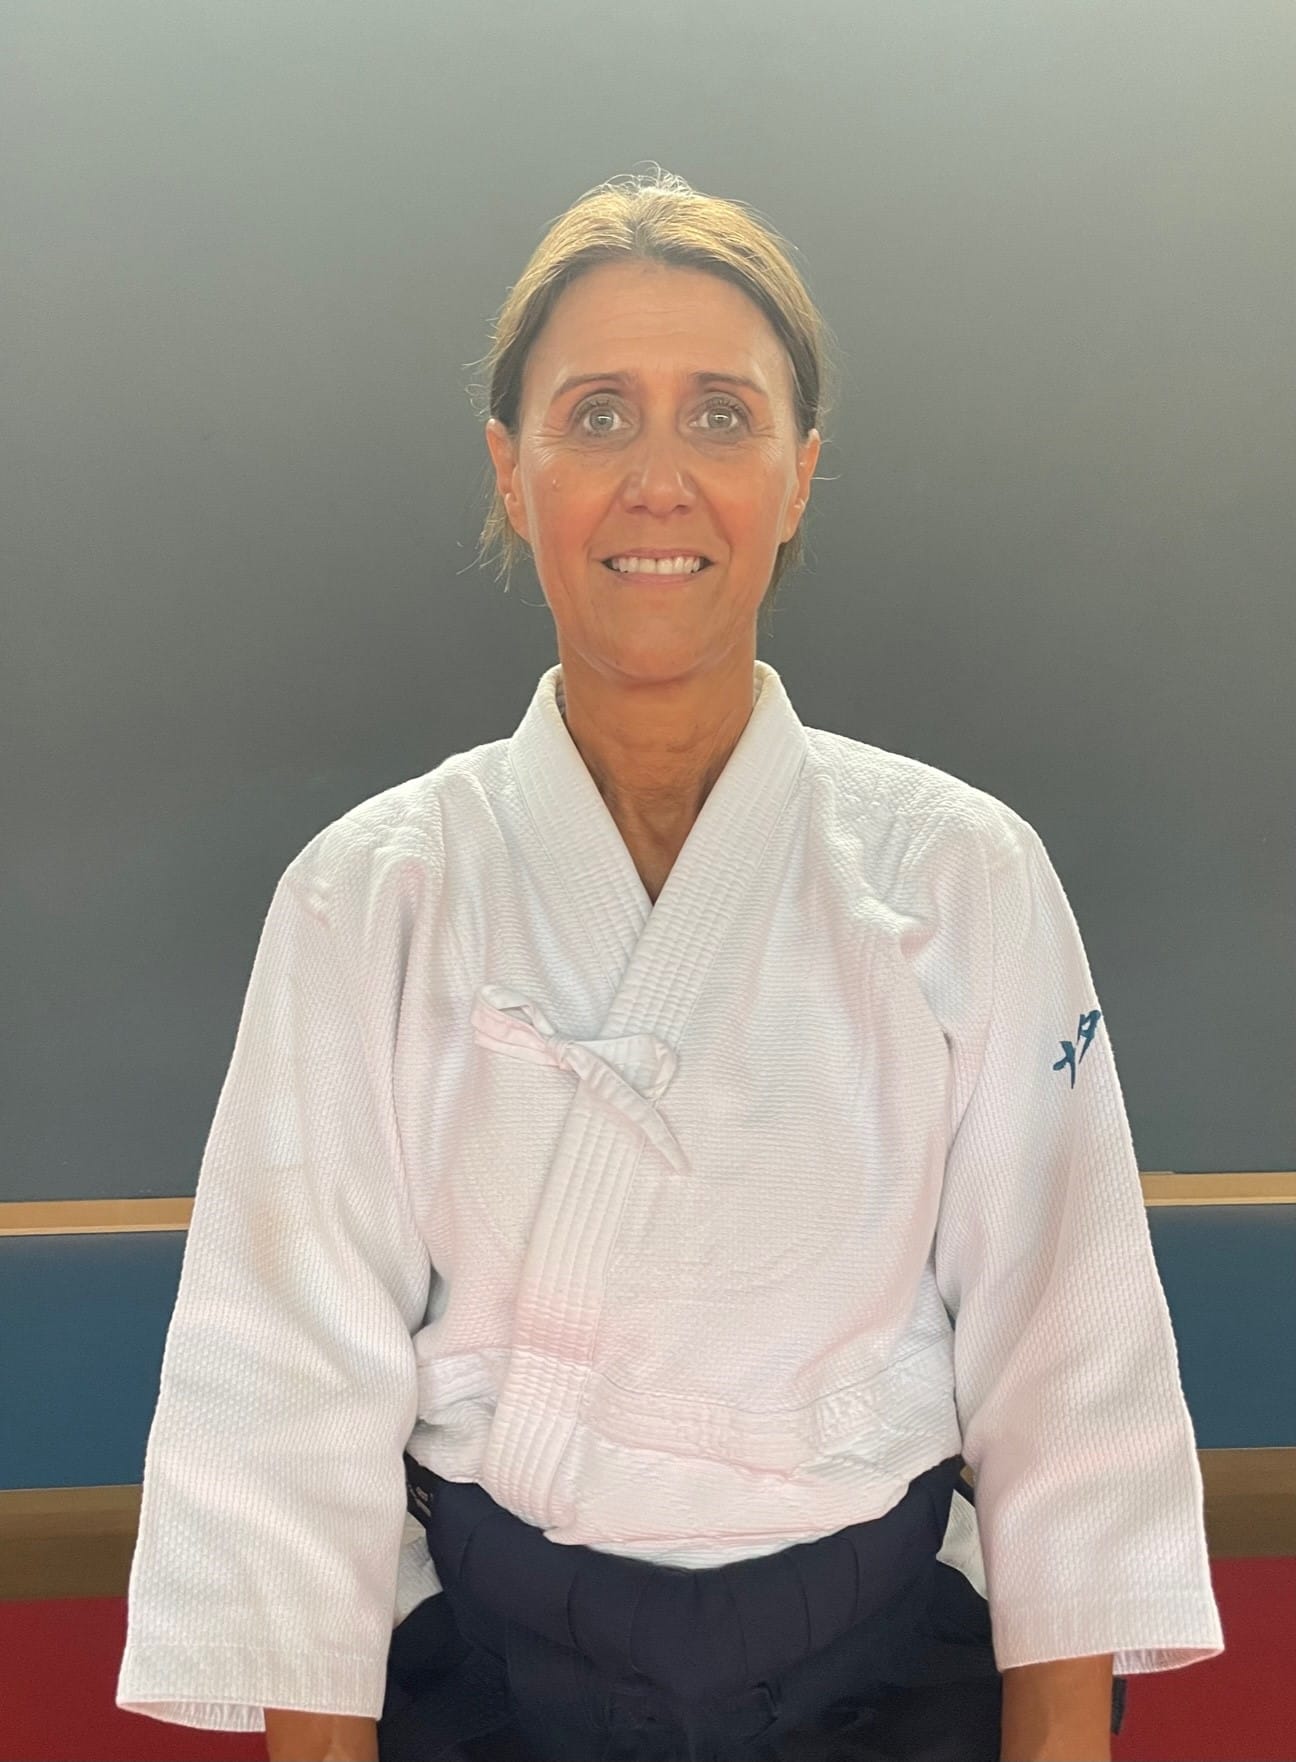 5ème Dan Aïkikai de Tokyo, Diplome d'Etat d'Aikido, Professeurs des écoles